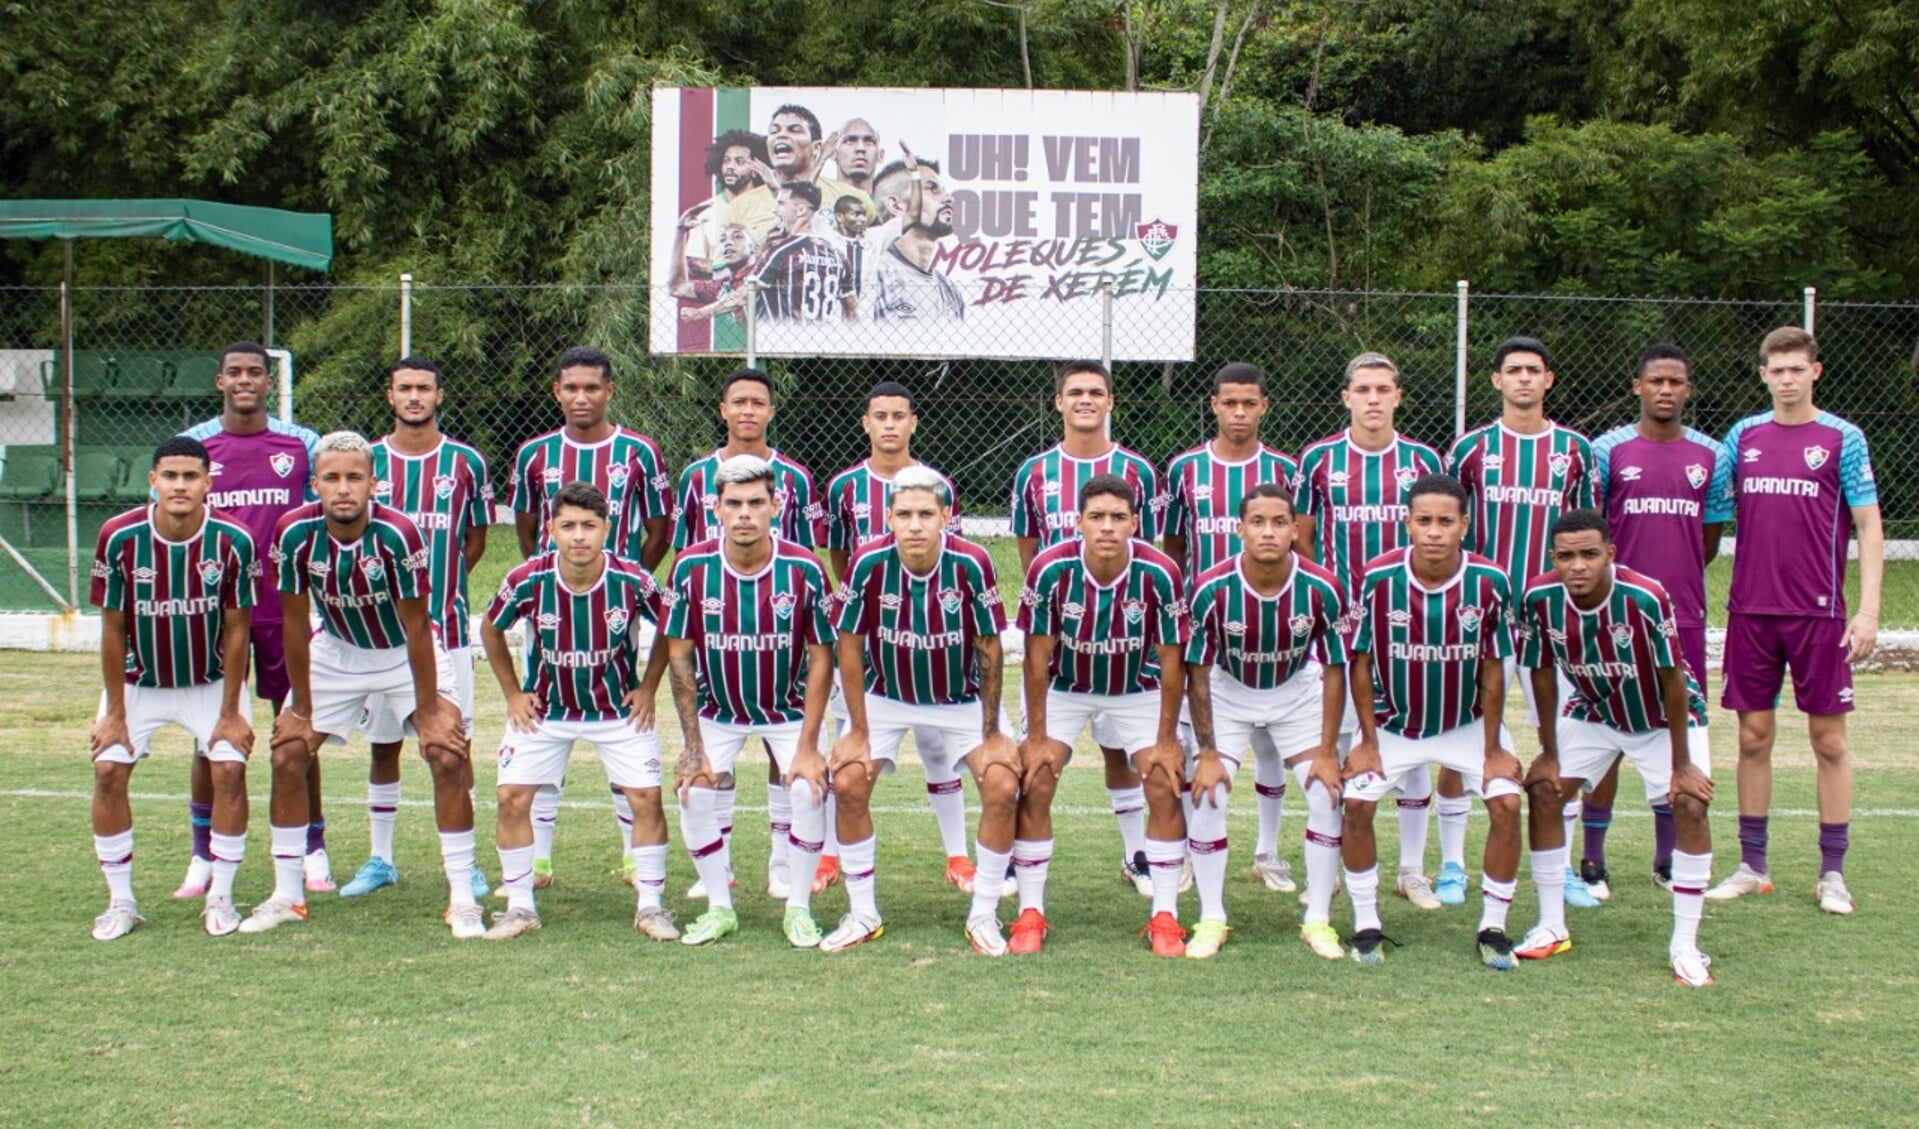 Fluminense is, naast Botafogo, Flamengo en Vasco da Gama, één van de vier grote clubs uit Rio de Janeiro, een stad met maar liefst 28 professionele voetbalclubs. Foto: PR